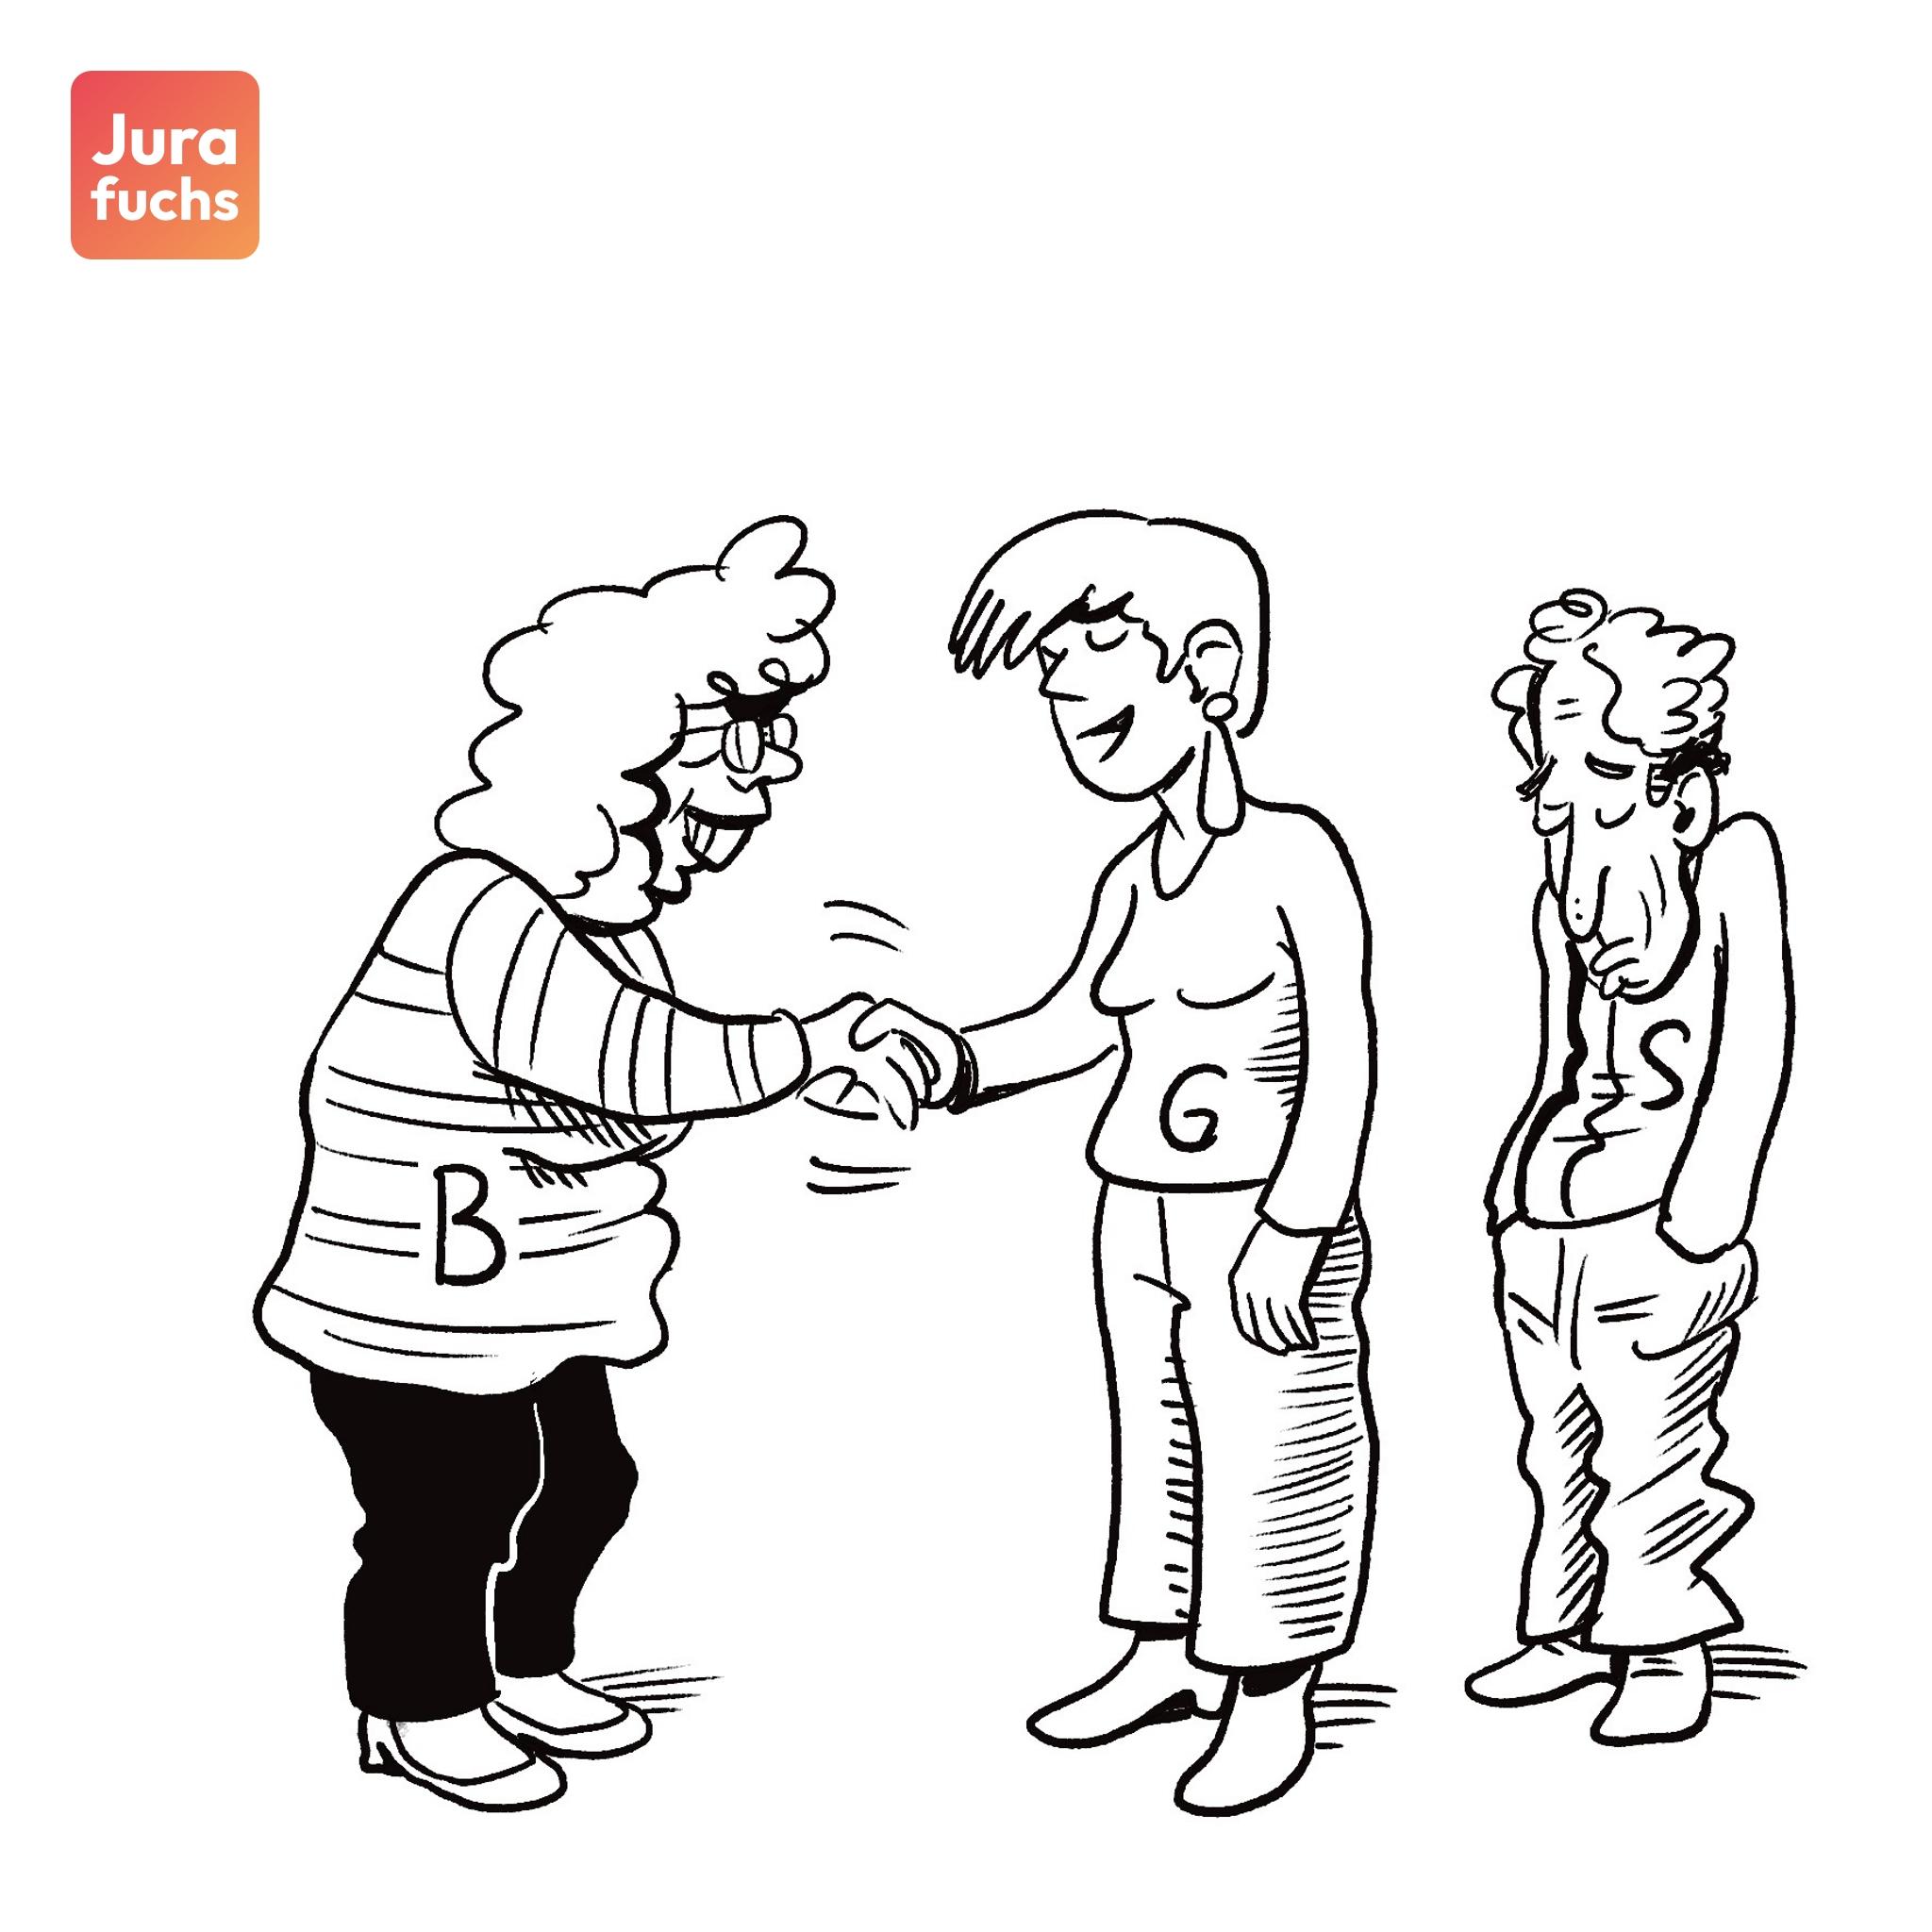 Jurafuchs-Illustration zum Fall zum Vorrang der cessio legis: Die beiden Personen B und G schütteln sich die Hand, während Person S traurig im Hintergrund steht.